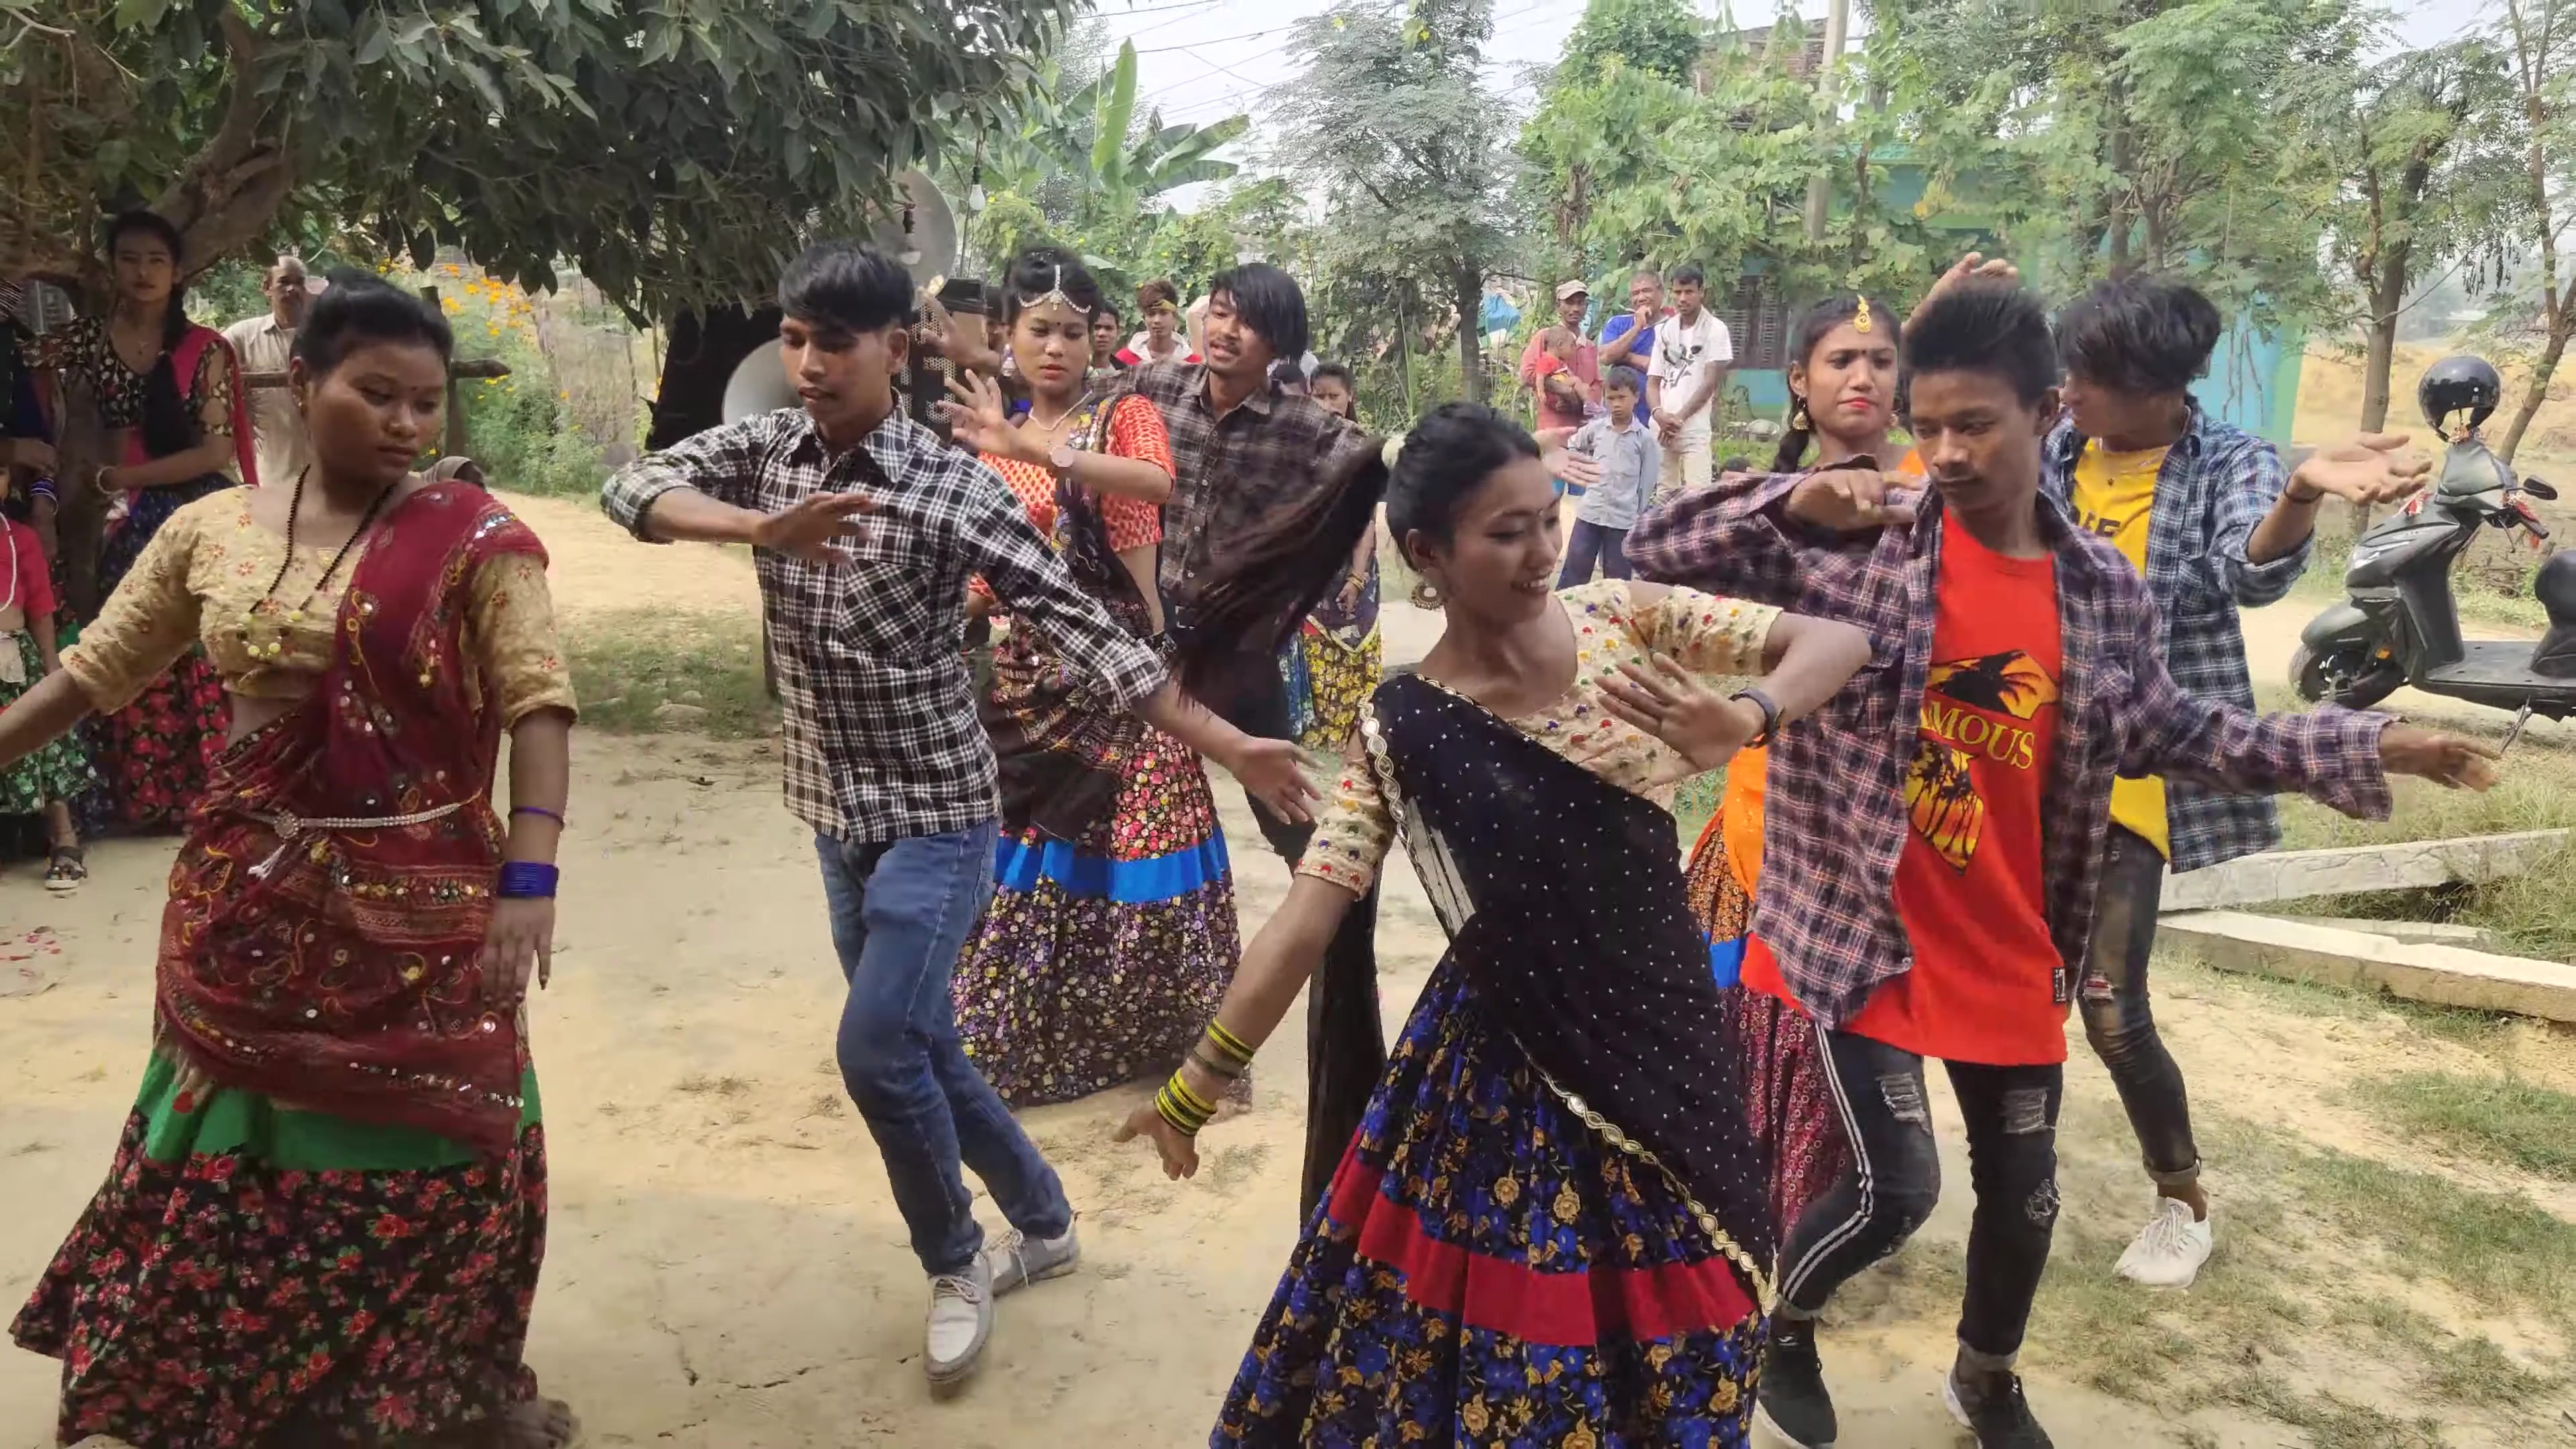 跳舞传统舞蹈的尼泊尔妇女在Chitwan，尼泊尔 编辑类库存图片. 图片 包括有 尼泊尔语, 尼泊尔, 莎丽服 - 60238909